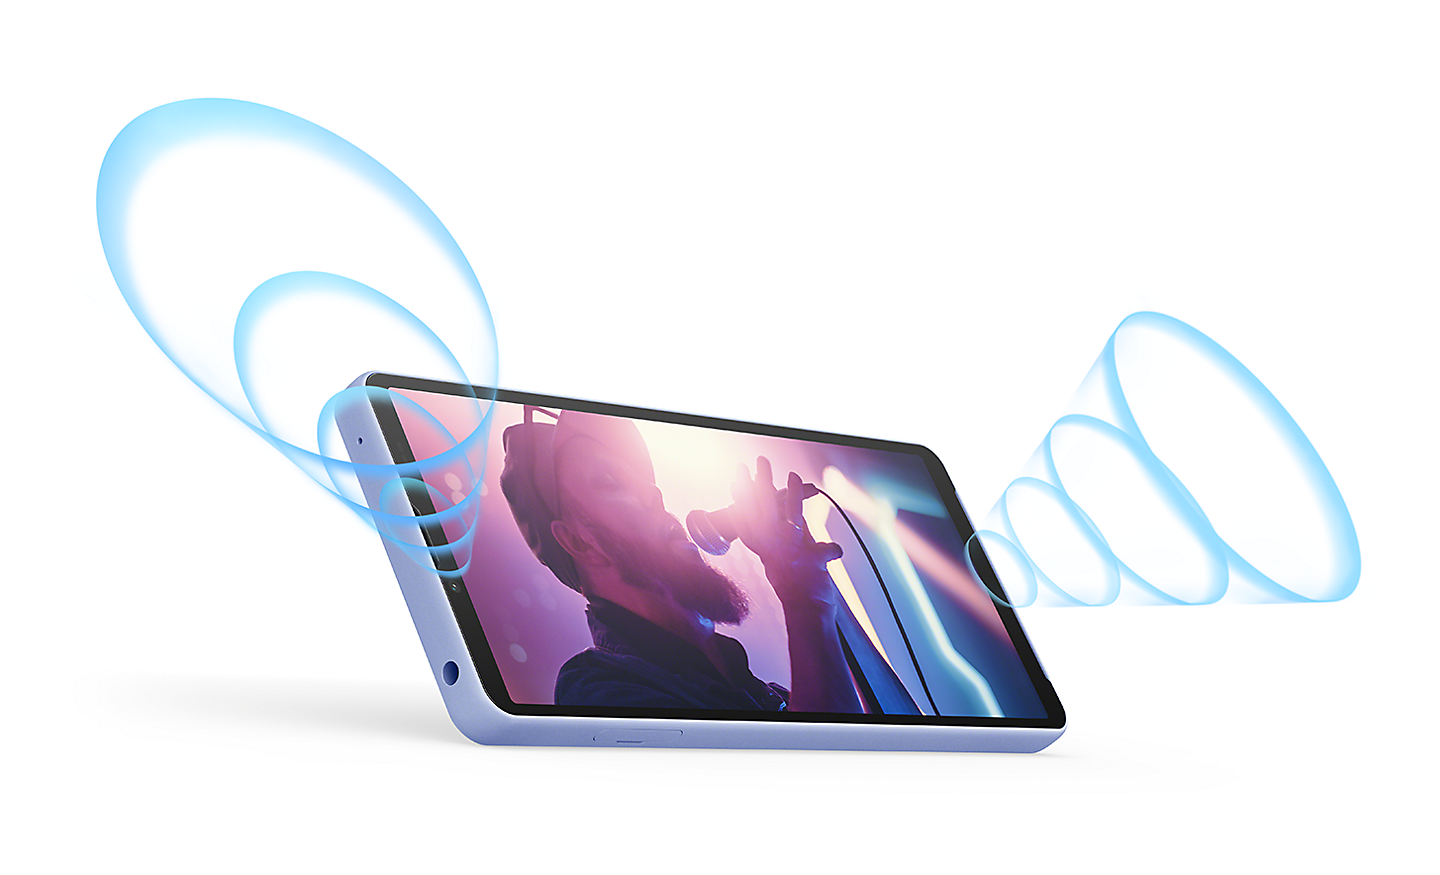 Xperia 10 V in liggende stand met een afbeelding van iemand die zingt op het scherm. Geïllustreerde blauwe geluidsgolven komen uit de stereospeakers aan de voorkant.